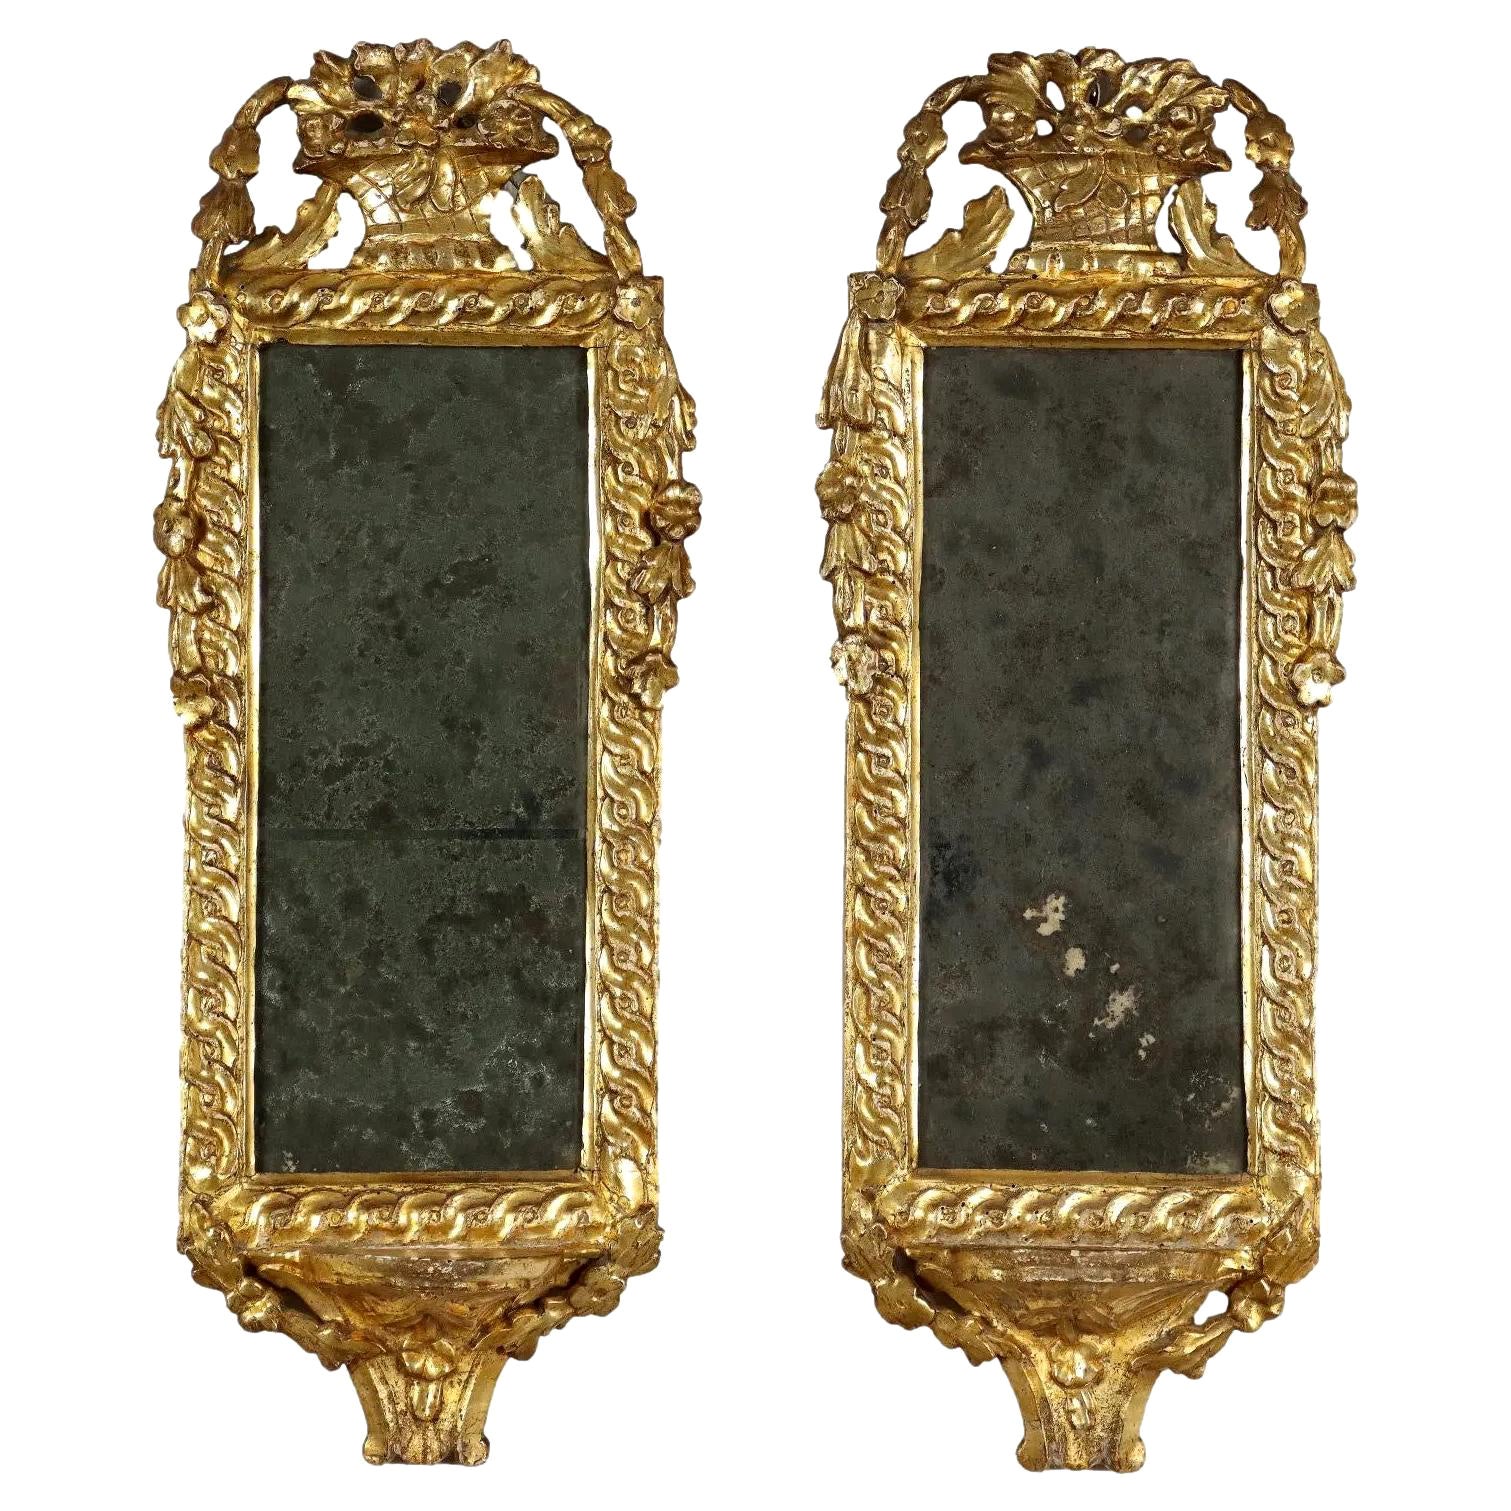 Paire de miroirs italiens néoclassiques en bois doré, datant d'environ 1780